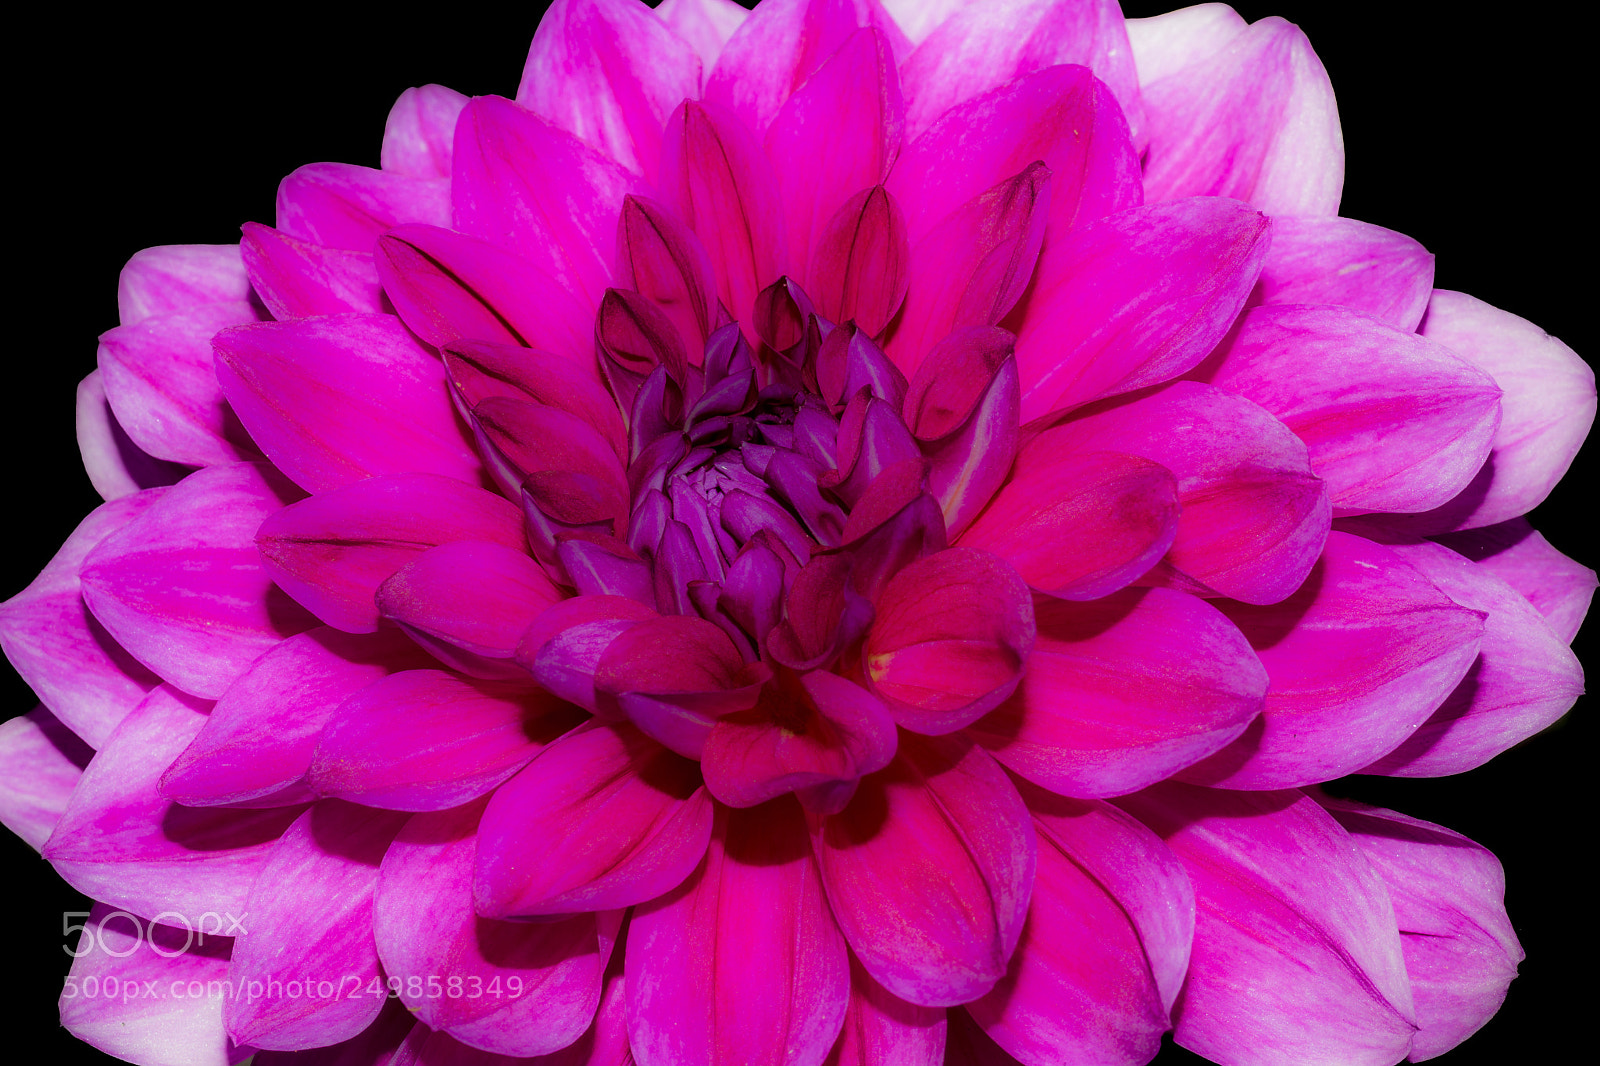 Nikon D5300 sample photo. Petals - chrysanthemum photography